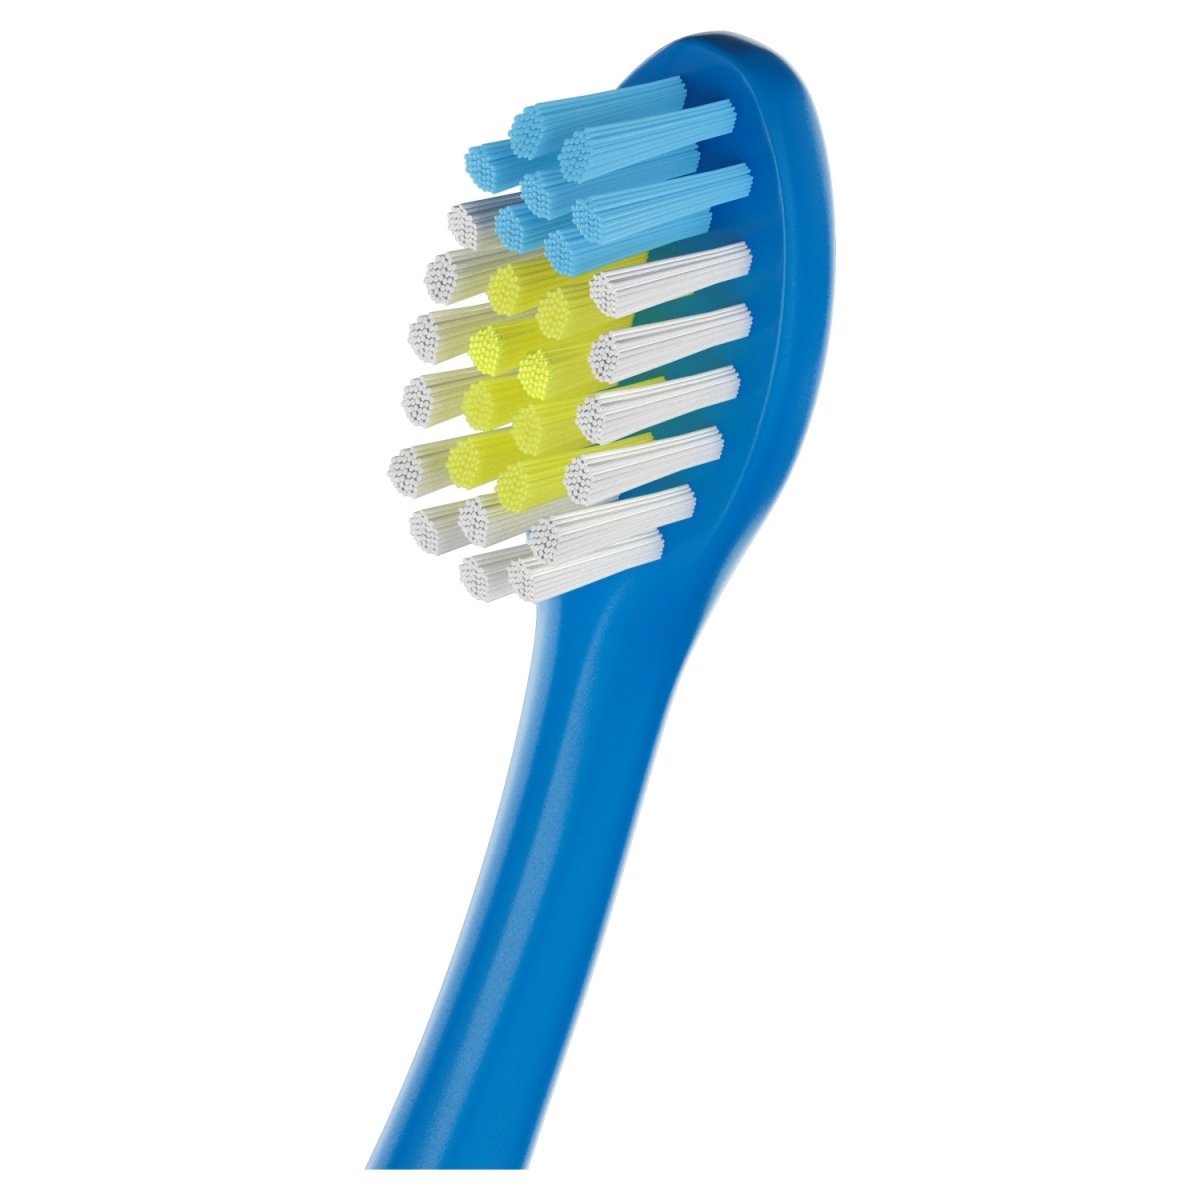 Colgate Toothbrush Kids Ocean Explorers 4 pack - Intamarque 8718951333901